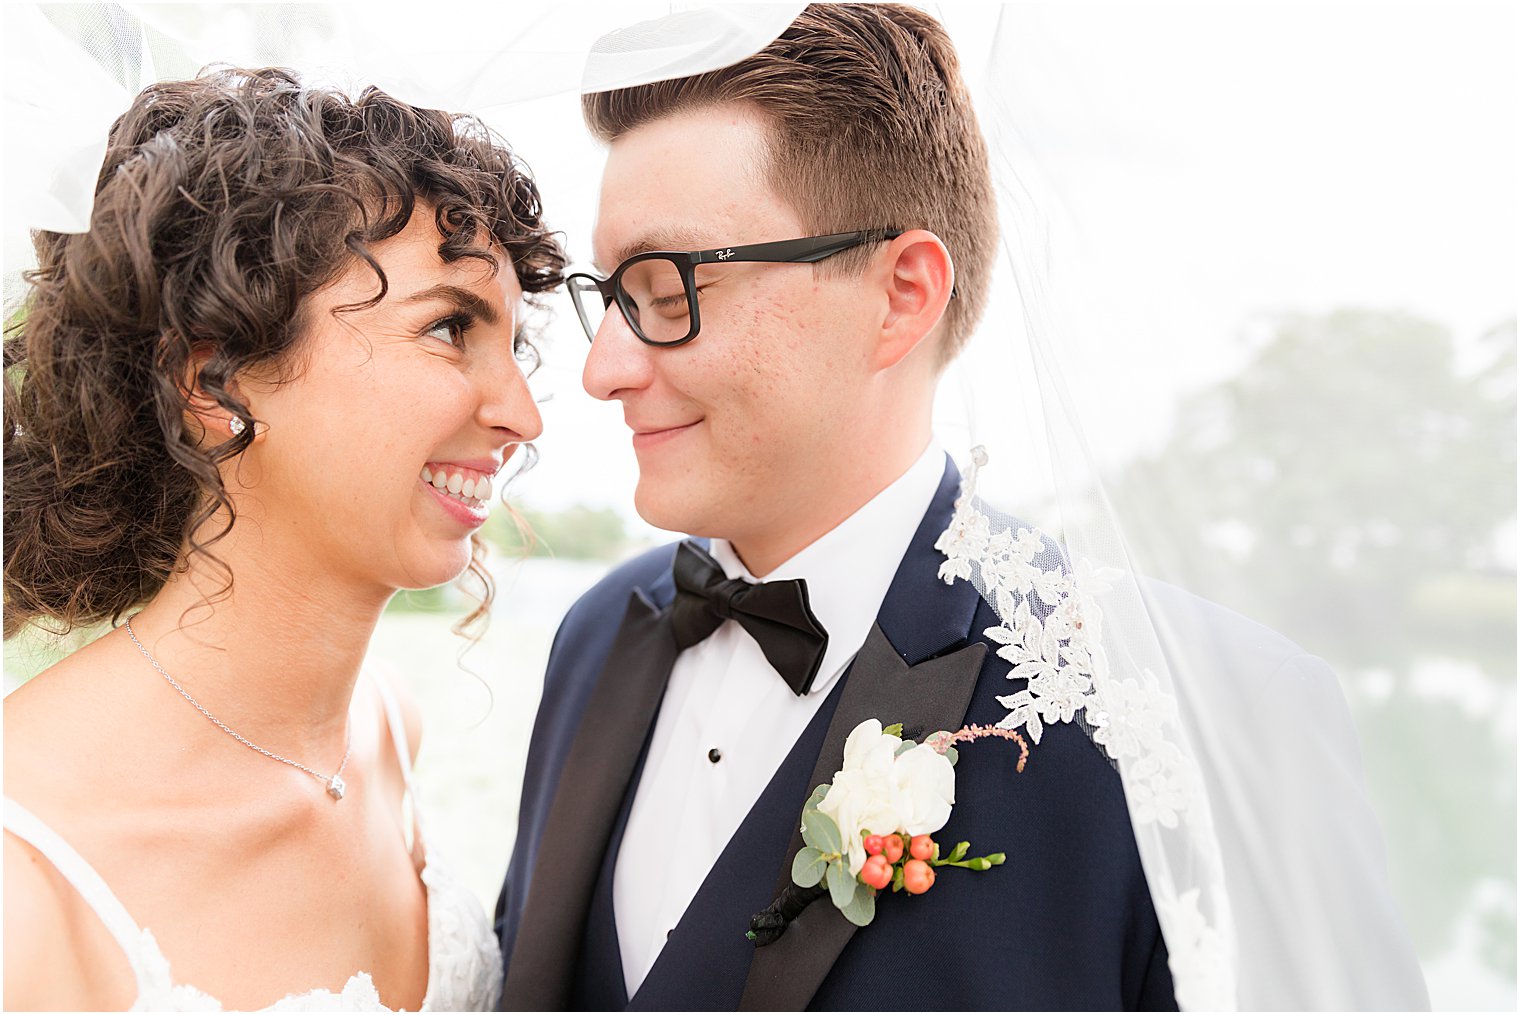 bride and groom smile together under bride's veil